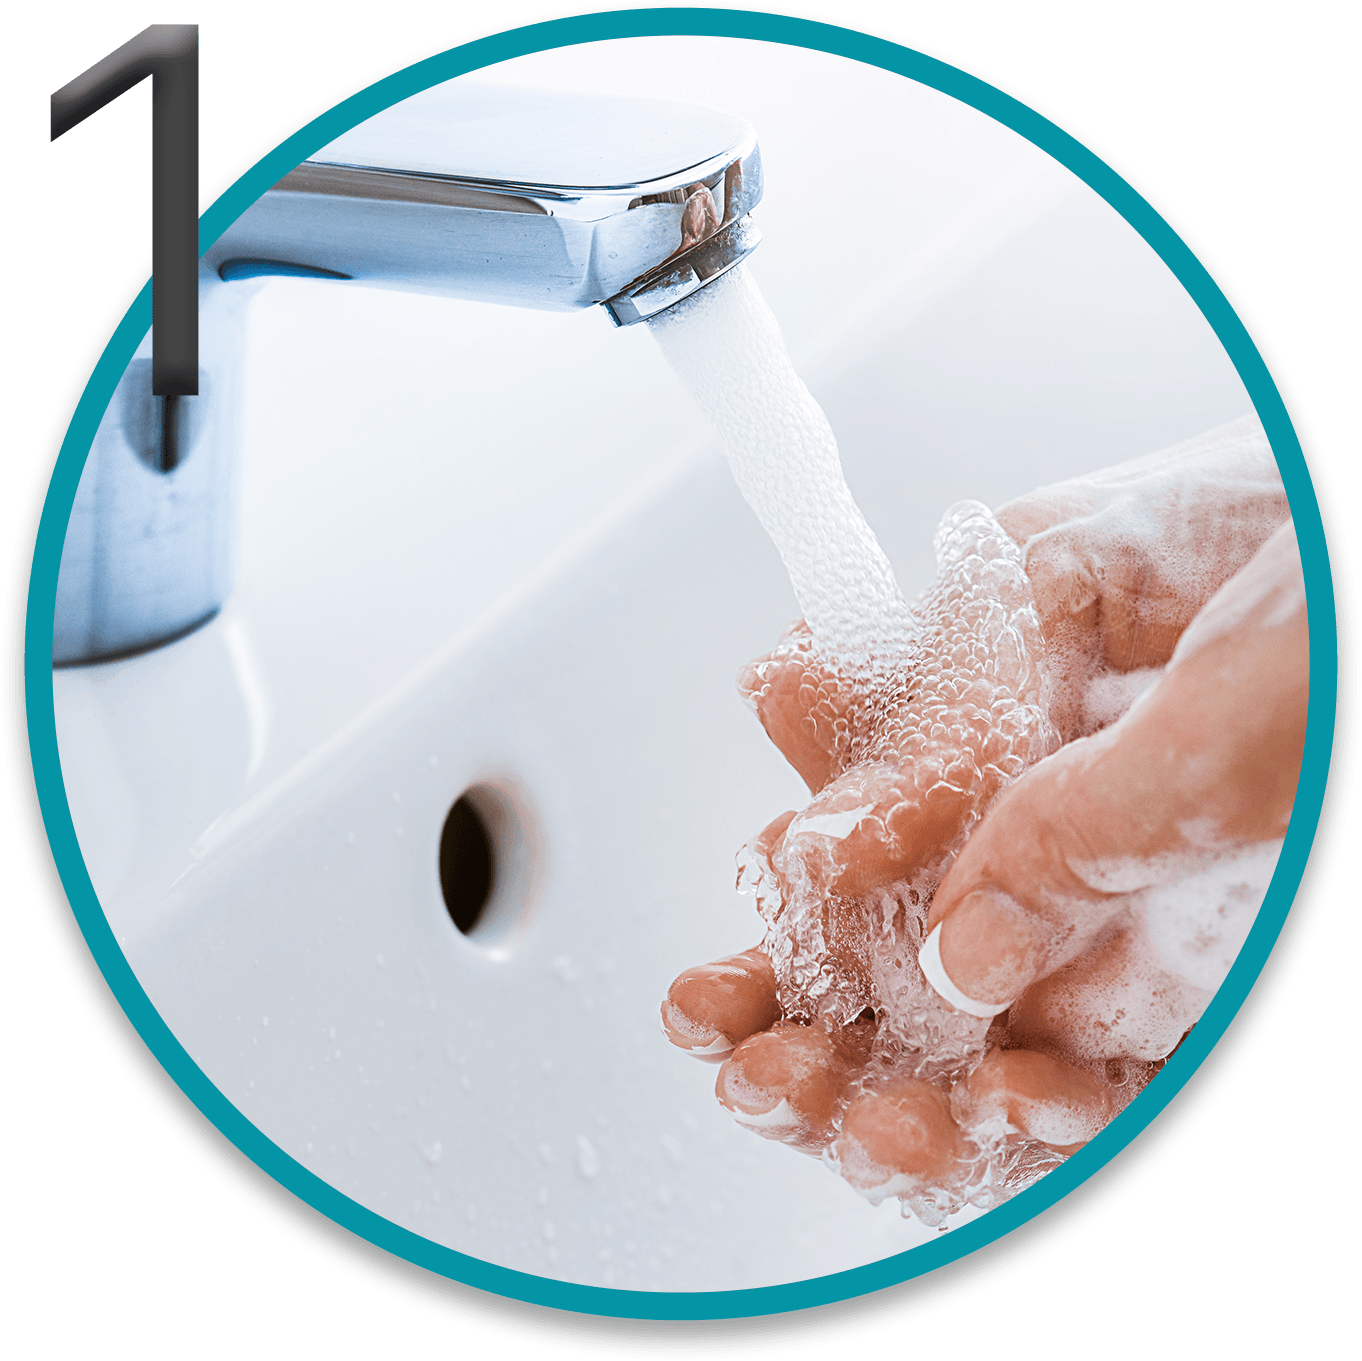 Una mujer se lava las manos con agua y jabón para ponerse sus lentes de contacto. Dentro de la imagen tenemos el número 1